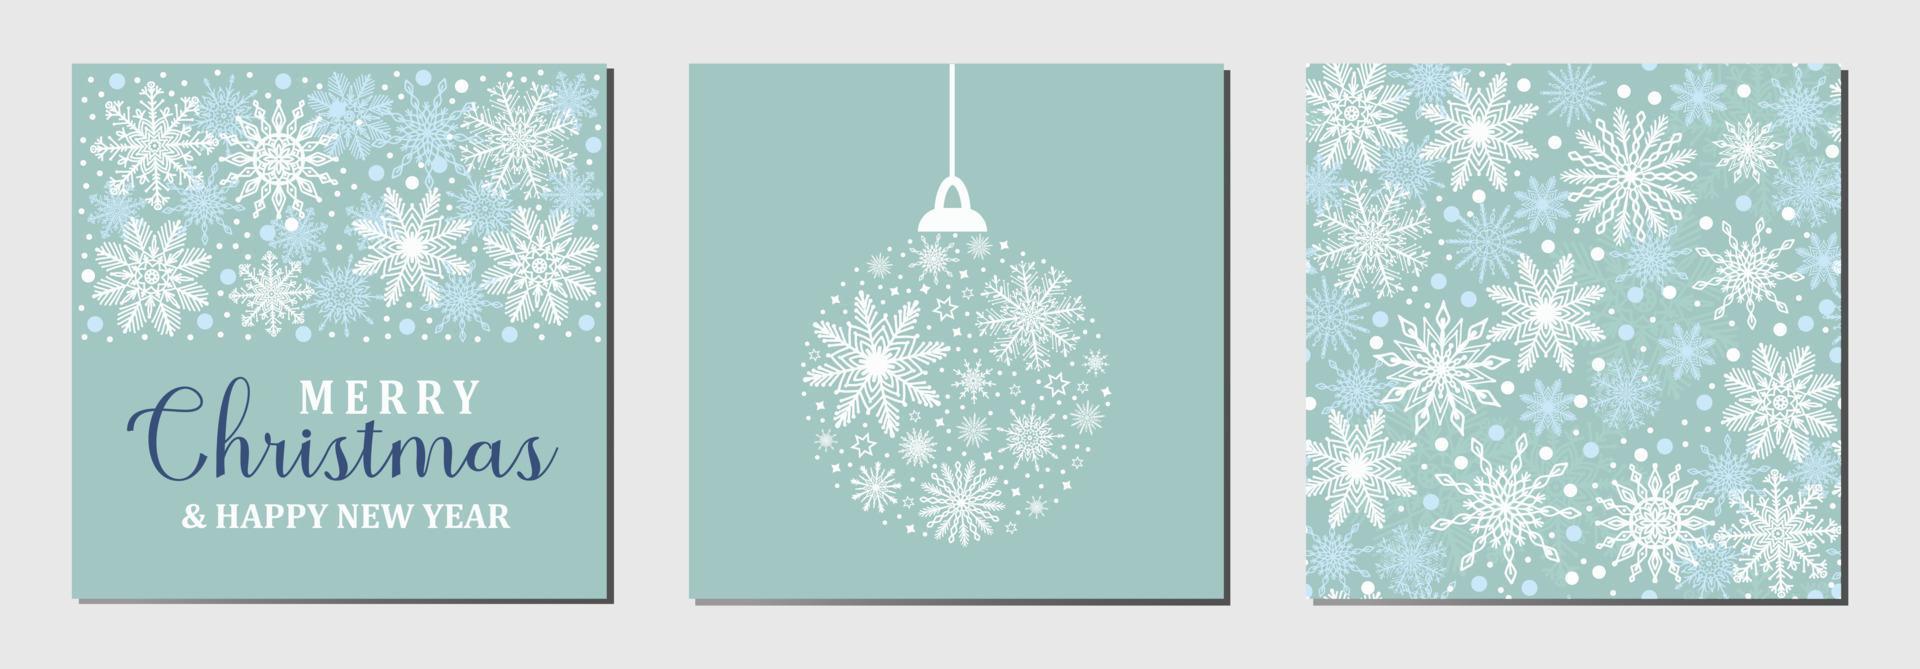 ensemble de trois cartes de voeux de vacances bleues joyeux noël et bonne année, motif de fond avec des flocons de neige blancs et silhouette de boule de noël. modèle de jeu de vecteur carré d'hiver